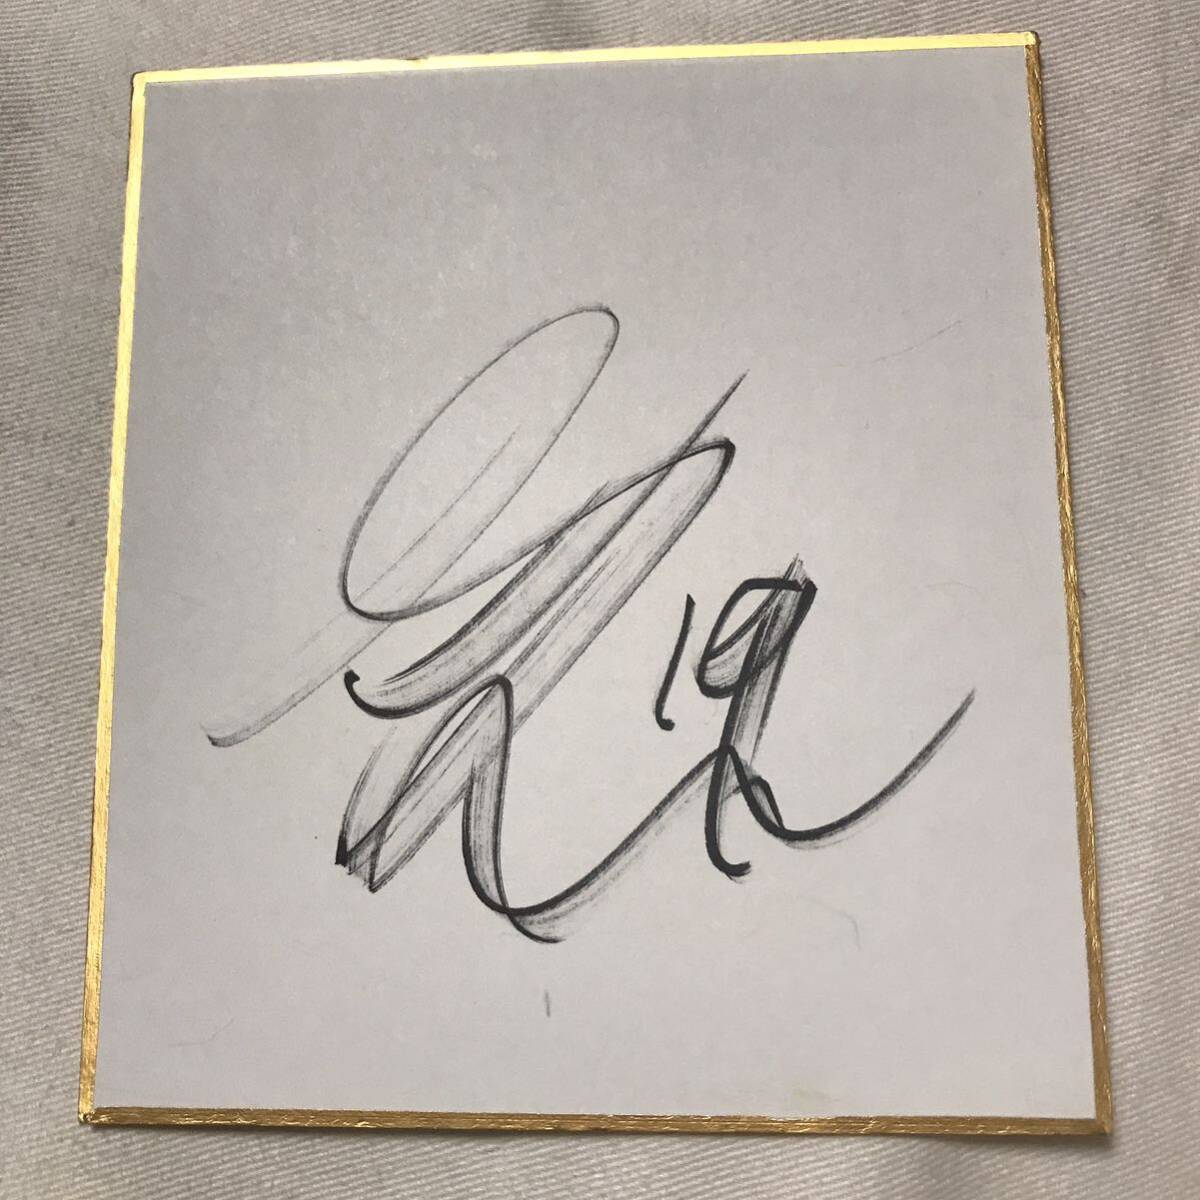 岐阜足球俱乐部球员松本步梦亲笔签名卡2张, 棒球, 纪念品, 相关商品, 符号